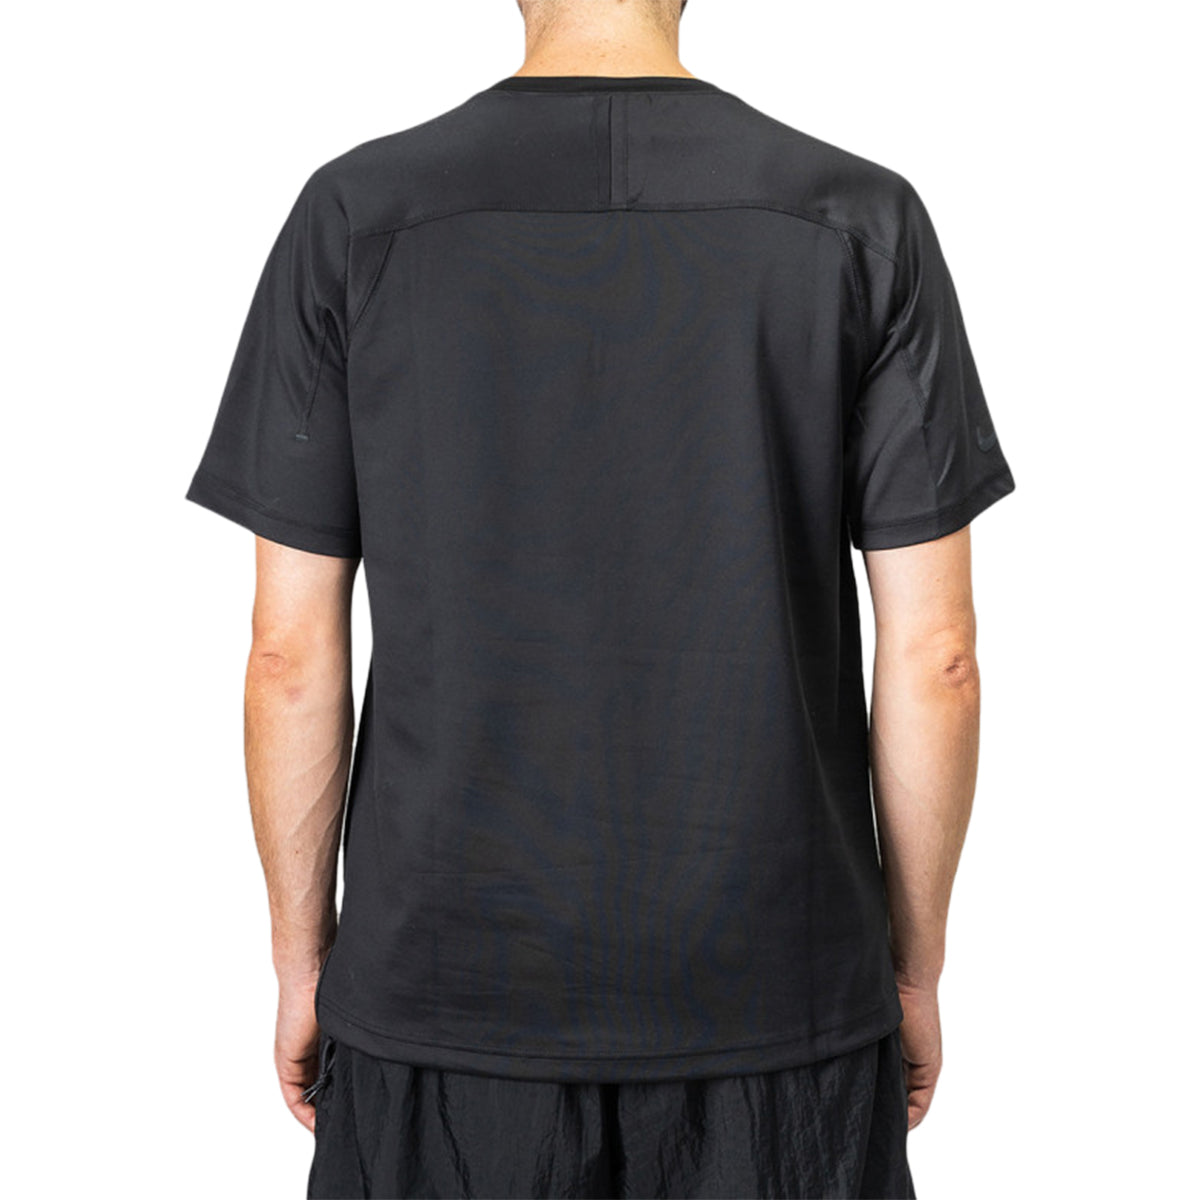 Nike Sportswear Tech Pack Tee Mens Style : Bv4441